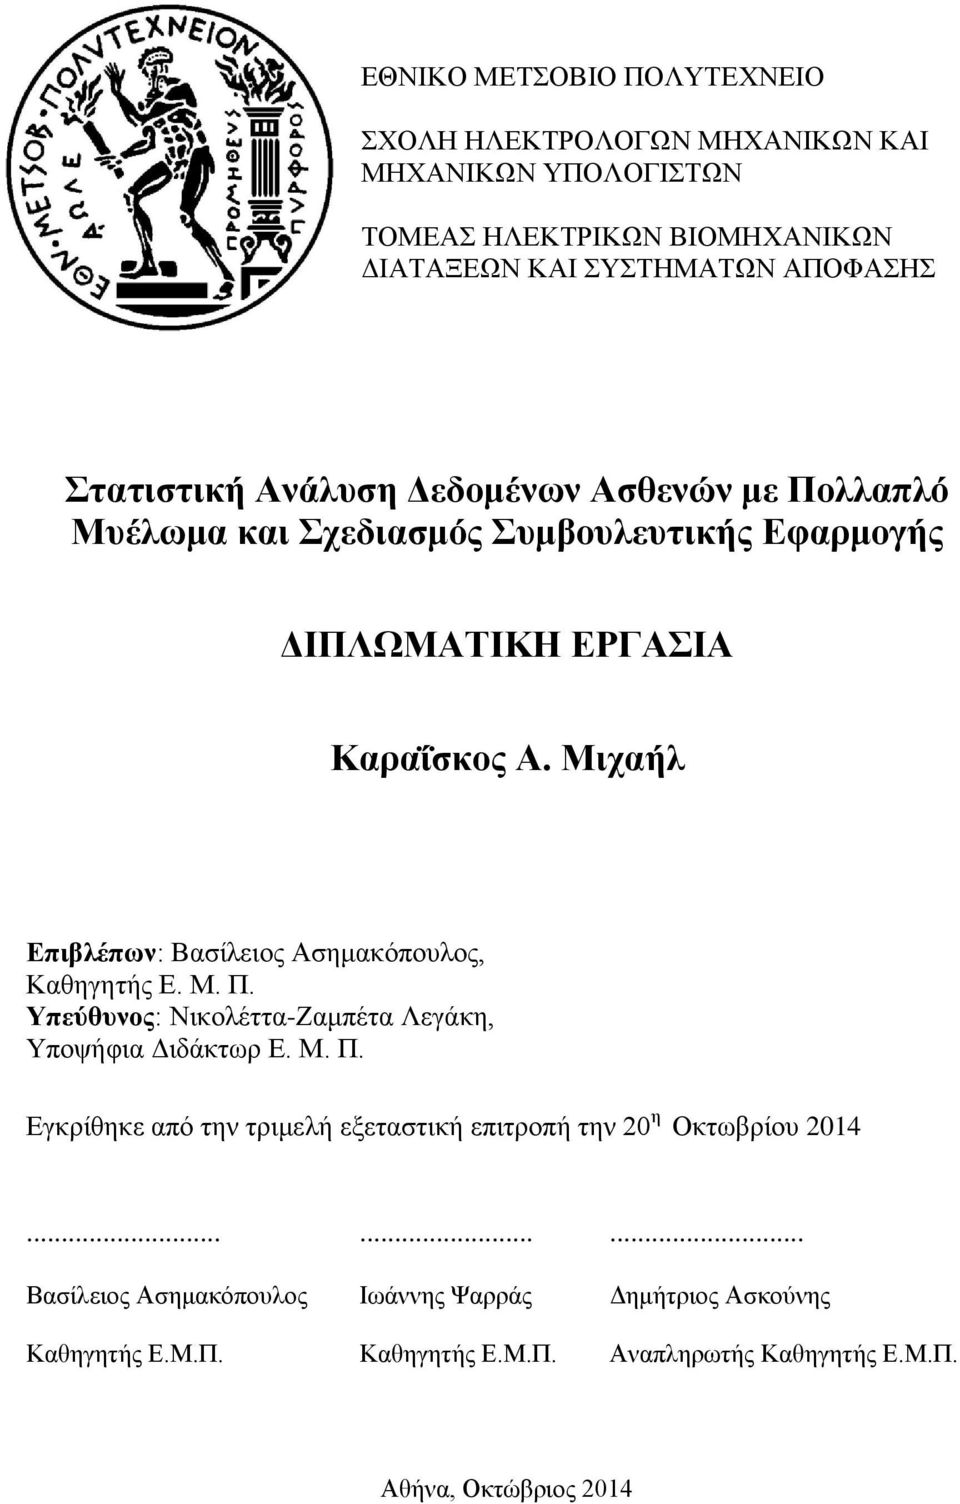 Μιχαήλ Επιβλέπων: Βασίλειος Ασημακόπουλος, Καθηγητής Ε. Μ. Π. Υπεύθυνος: Νικολέττα-Ζαμπέτα Λεγάκη, Υποψήφια Διδάκτωρ Ε. Μ. Π. Εγκρίθηκε από την τριμελή εξεταστική επιτροπή την 20 η Οκτωβρίου 2014.